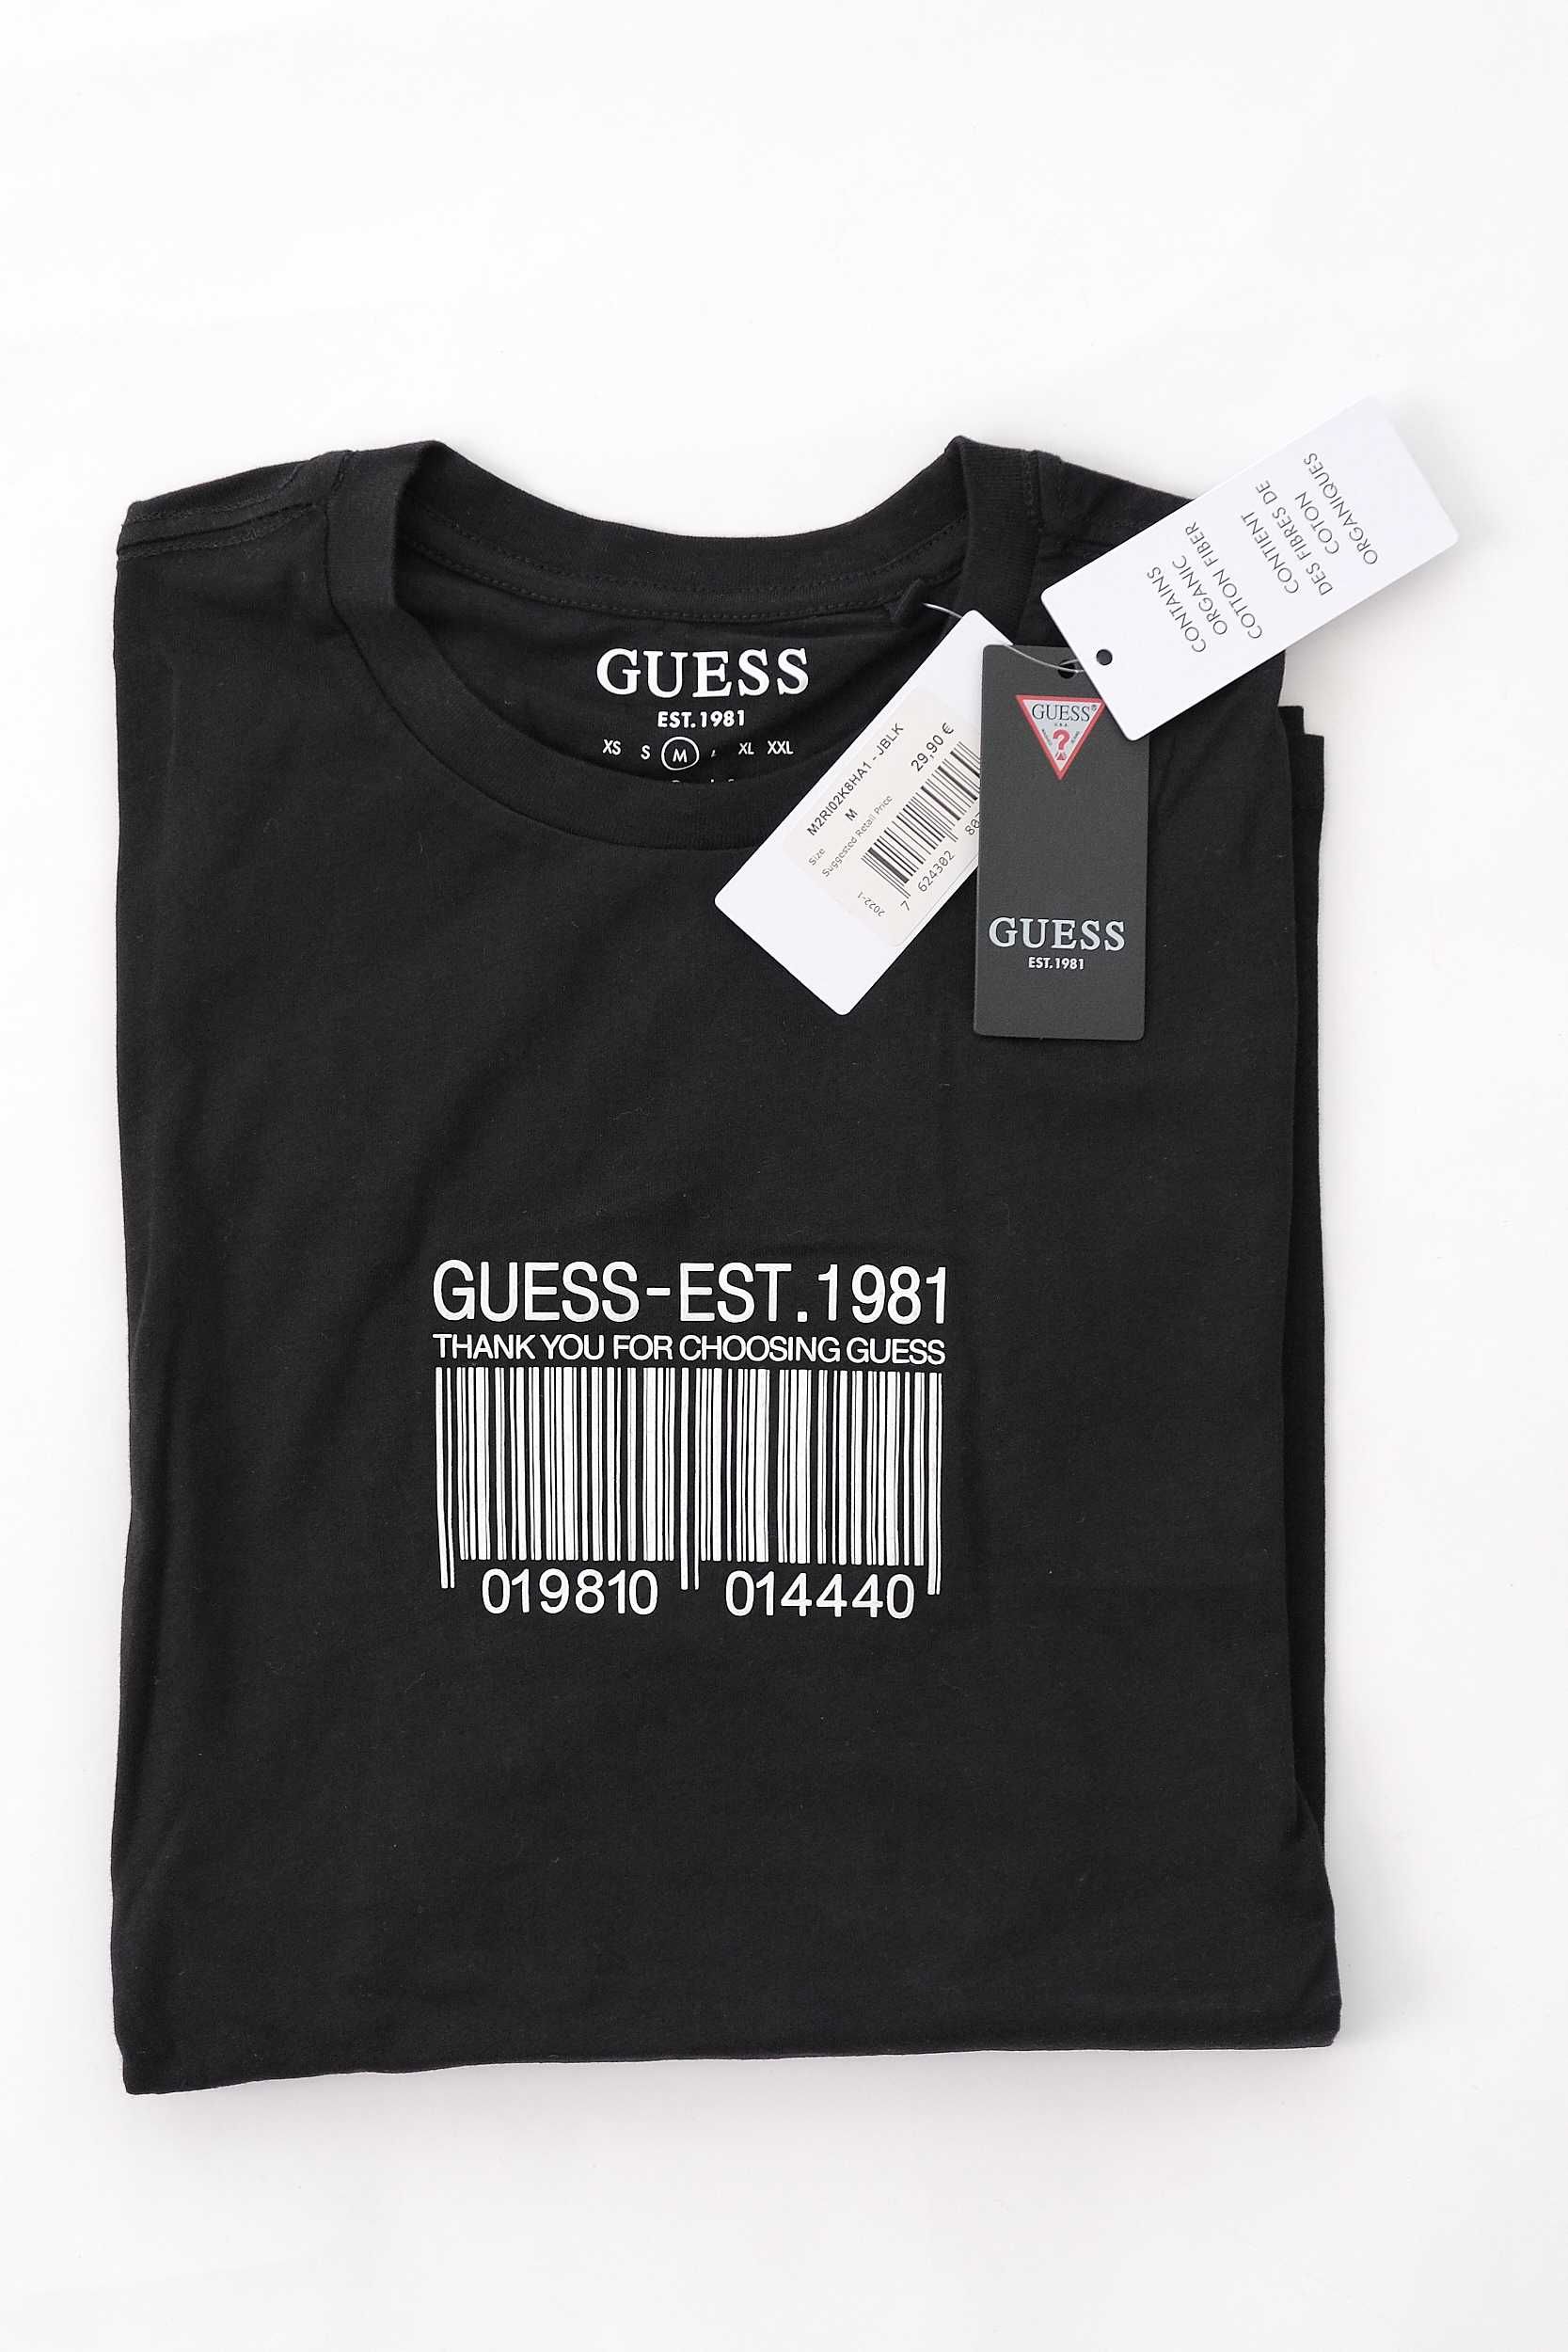 ПРОМО GUESS S,М и XXL размери-Оригинална черна тениска с баркод